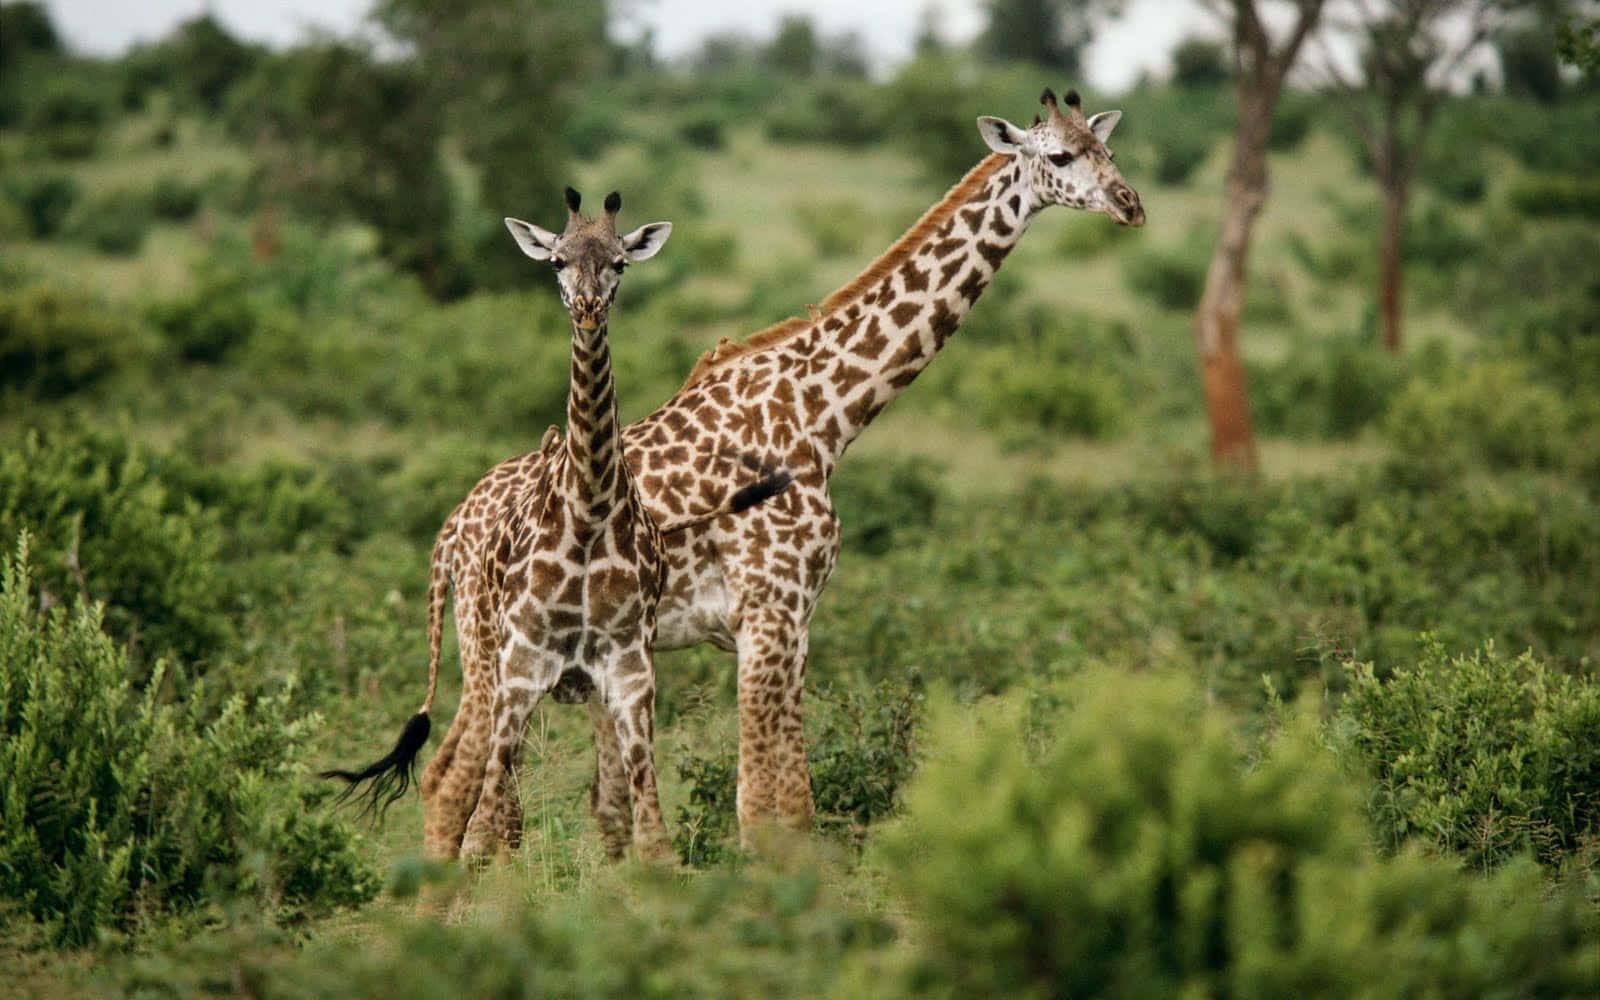 Bildvon Wilden Tieren, Giraffen In Der Nähe Von Bäumen